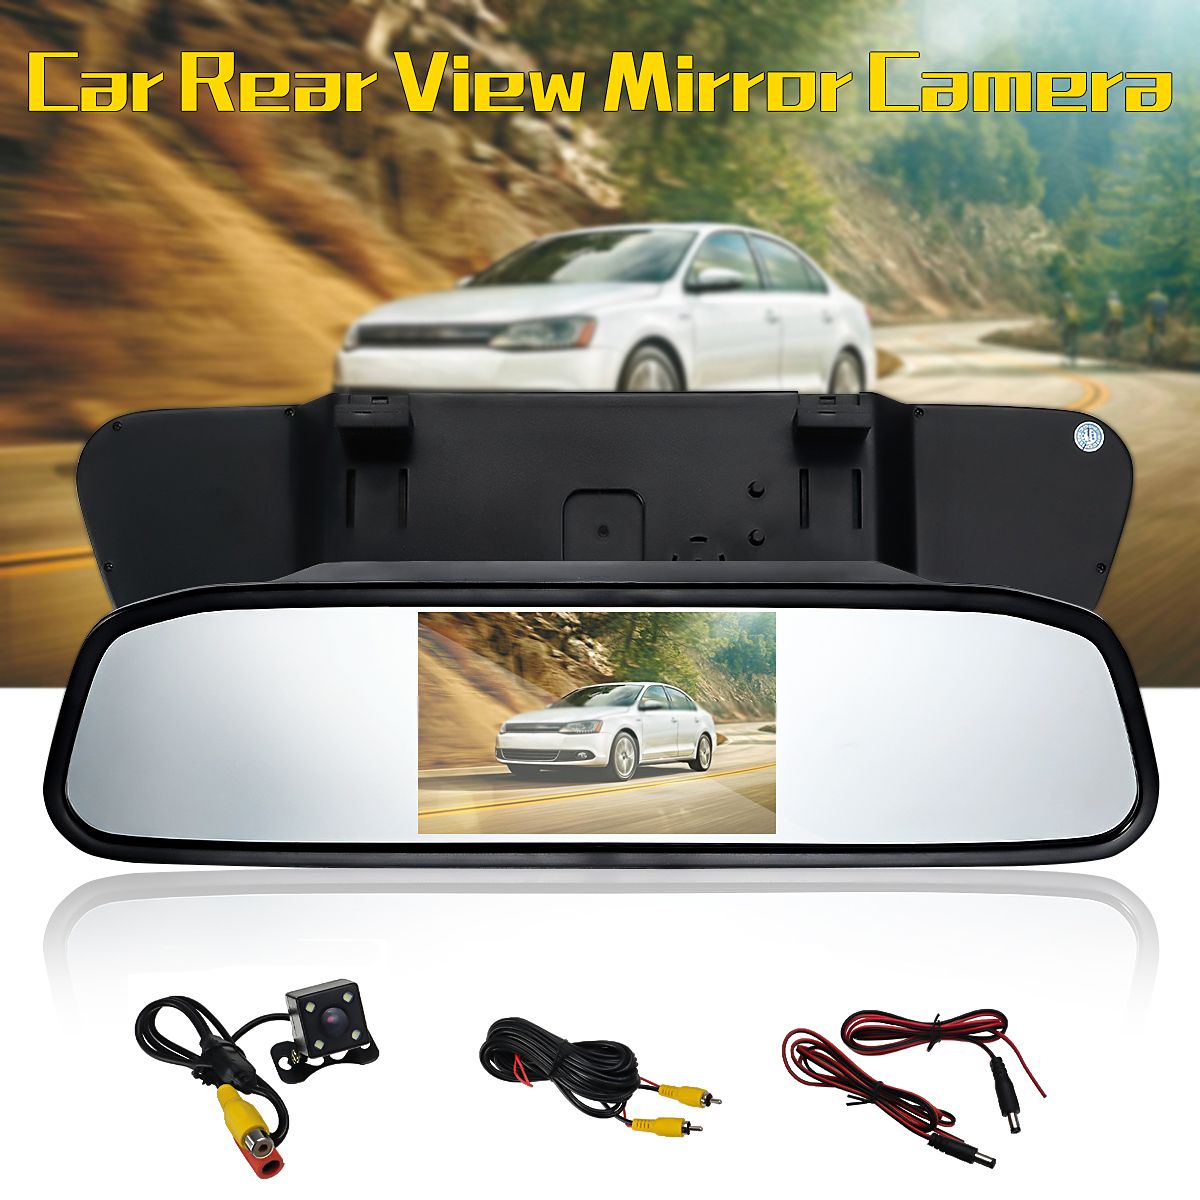 43inch-Car-LCD-TFT-Mirror-Rear-View-Monitor-4LED-Night-Vision-Rear-View-Camera-1172883